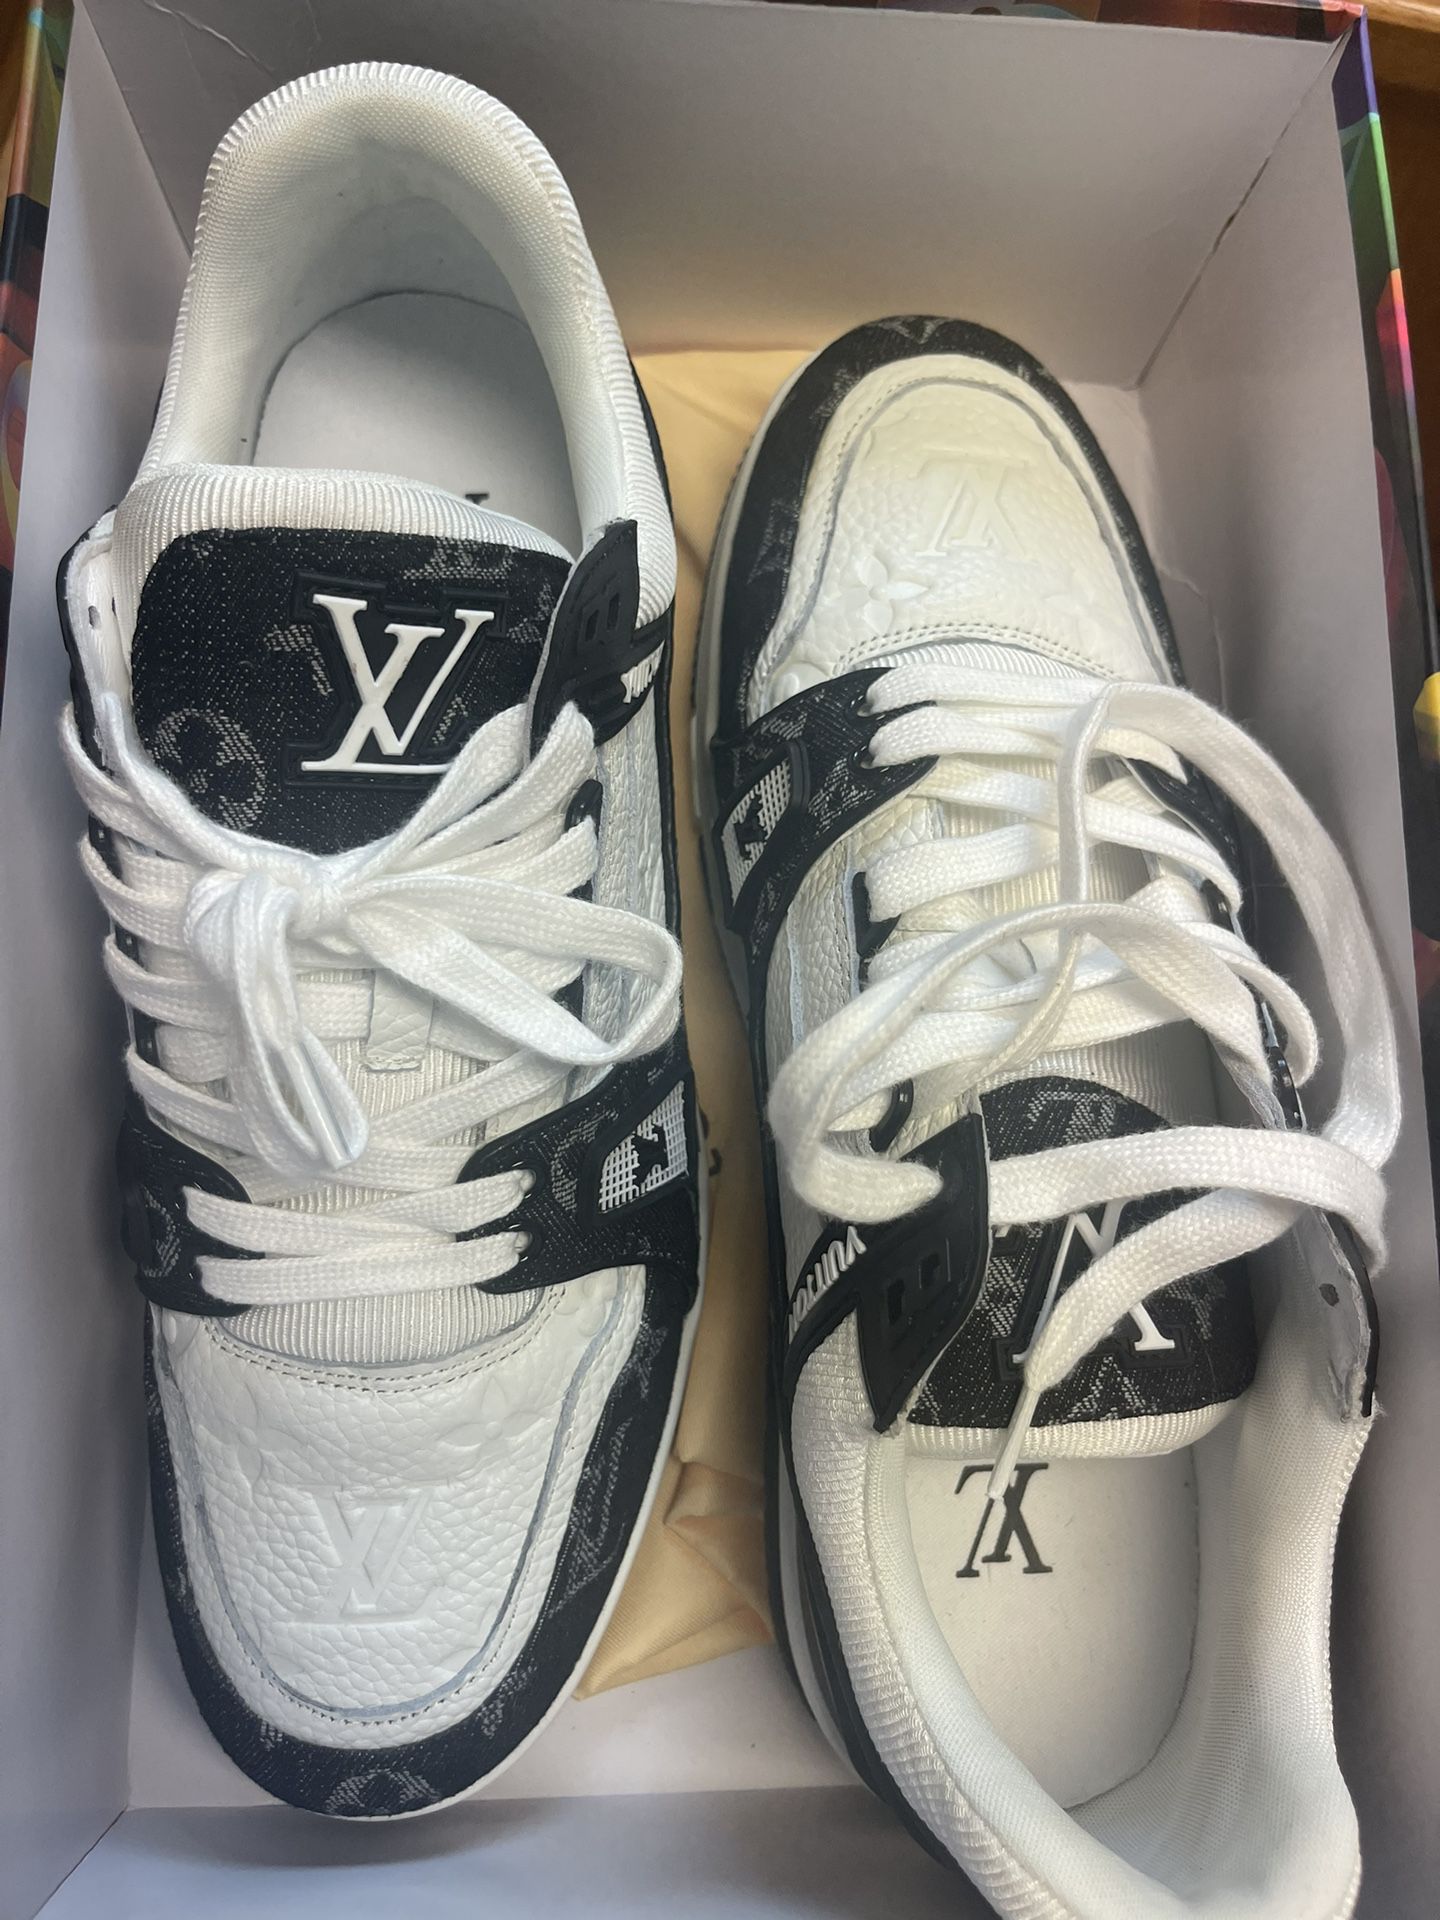 Louis Vuitton Black/White Sneakers Size 12 (Price negotiatable